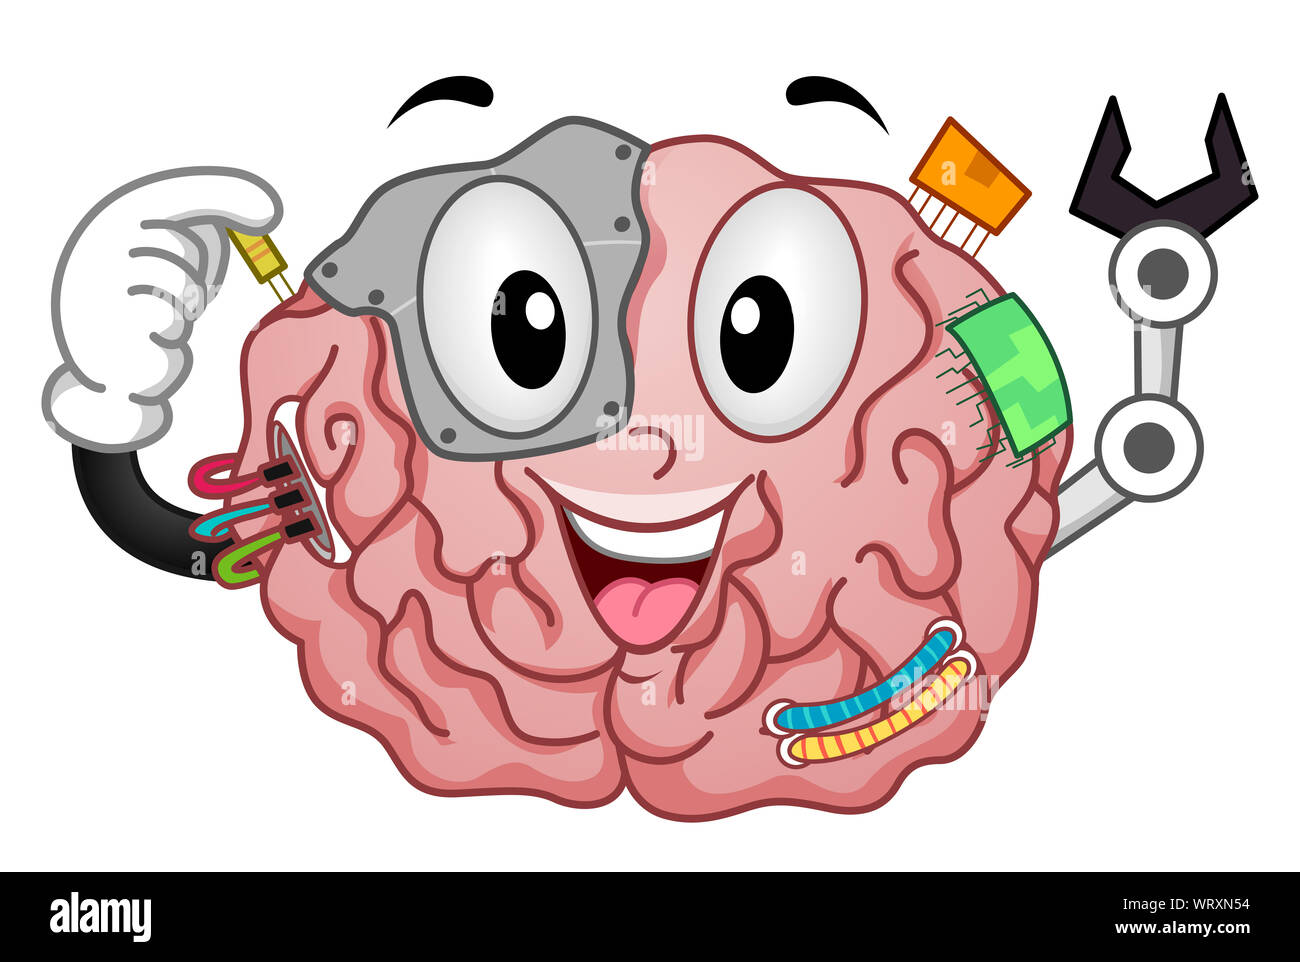 Illustrazione di un cervello mascotte Cyborg con chips, fili di metallo e viti Foto Stock